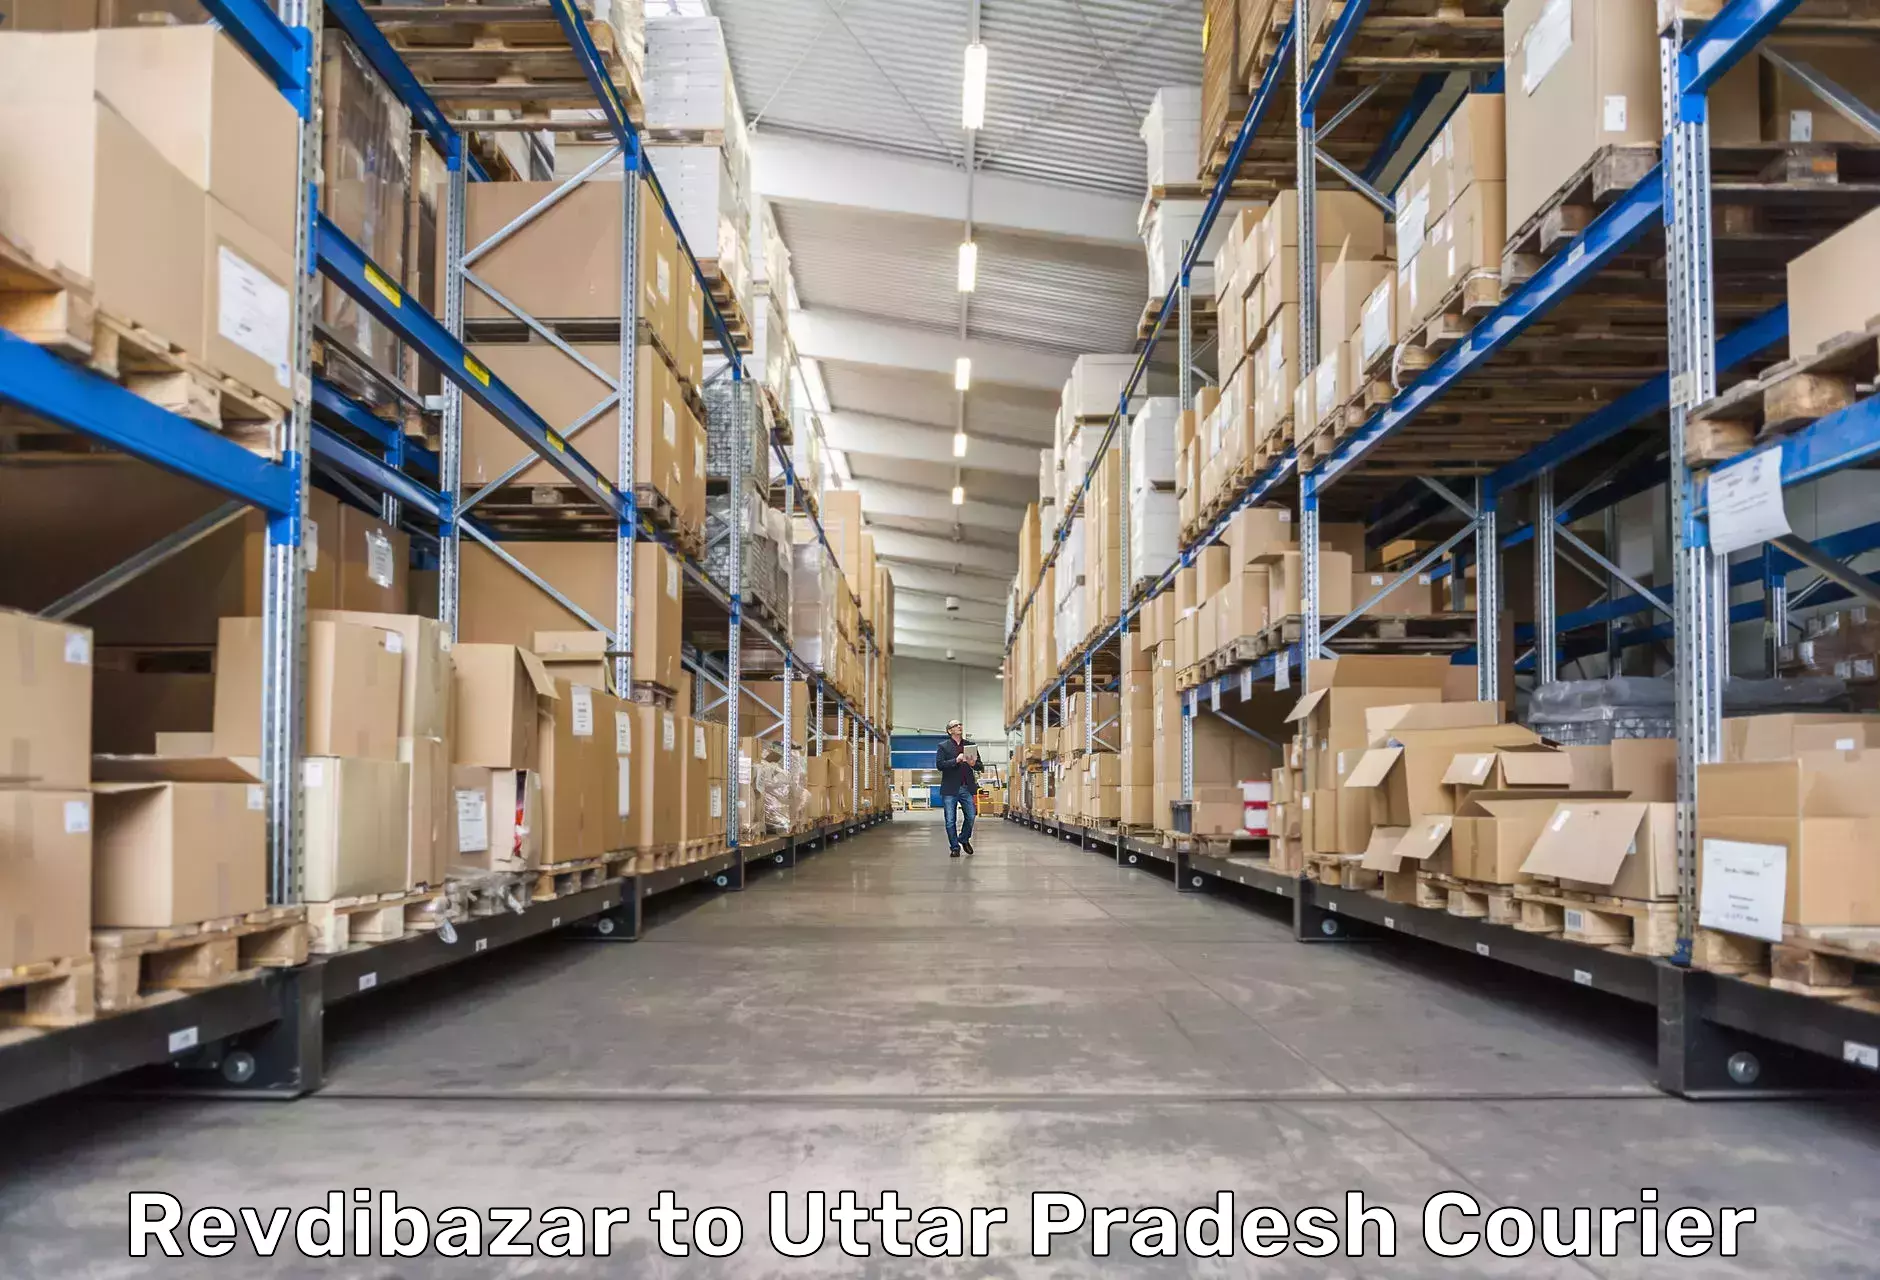 Express package transport Revdibazar to Uttar Pradesh